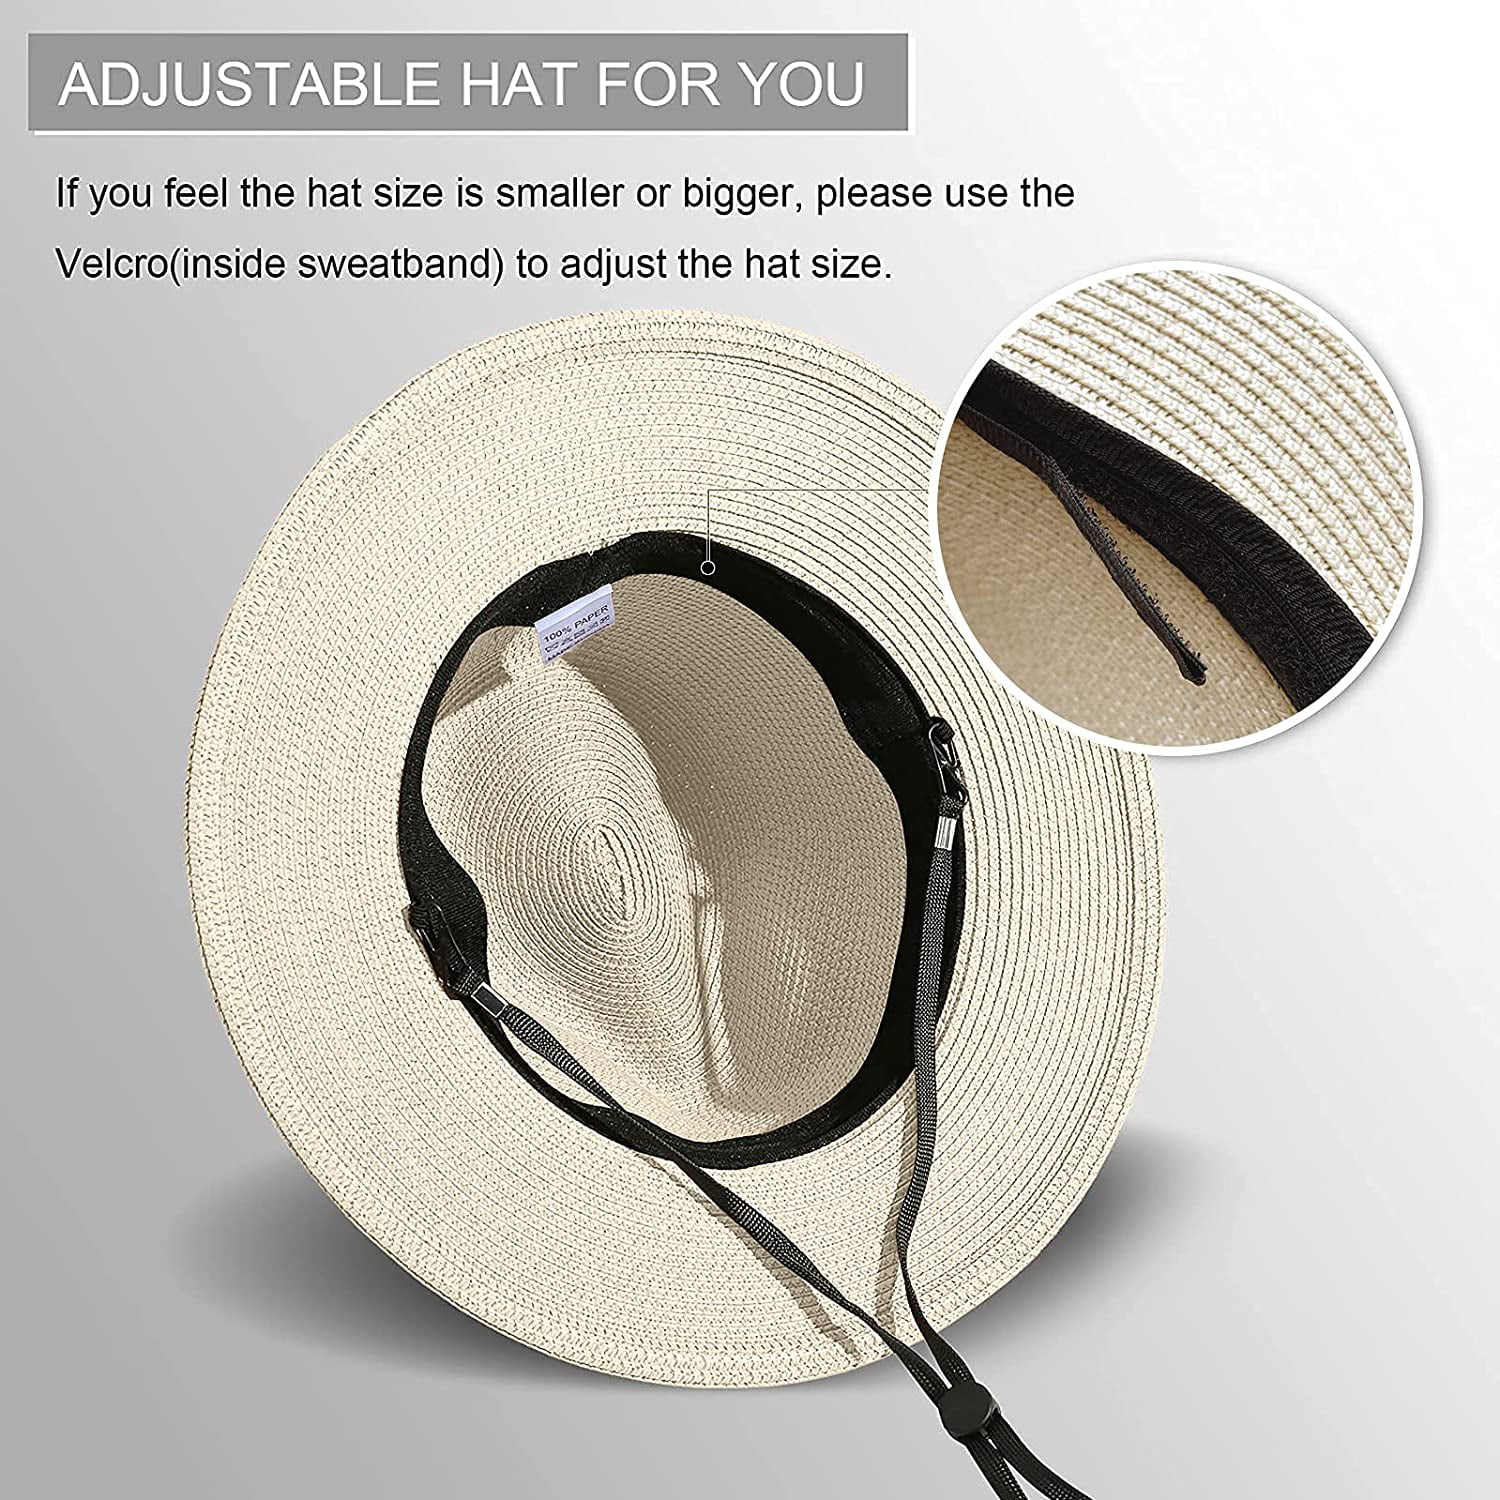 2 Pack Women Straw Hat Panama Wide Brim Roll up Hat Fine Braid